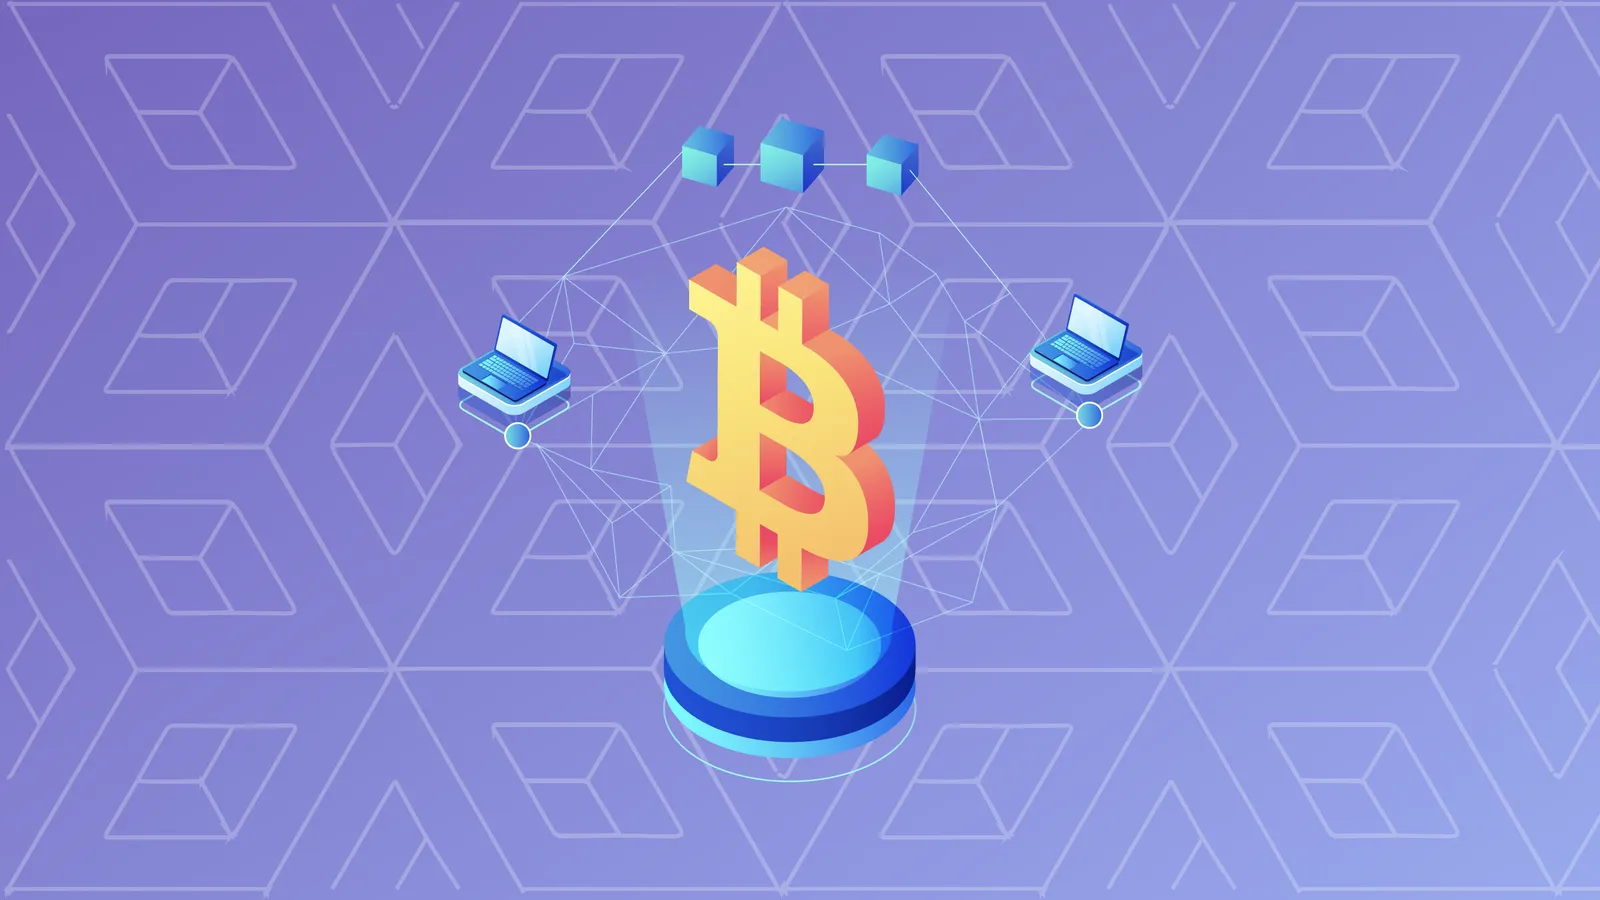 Una ilustración del signo de Bitcoin con los nodos de la blockchain a su alrededor